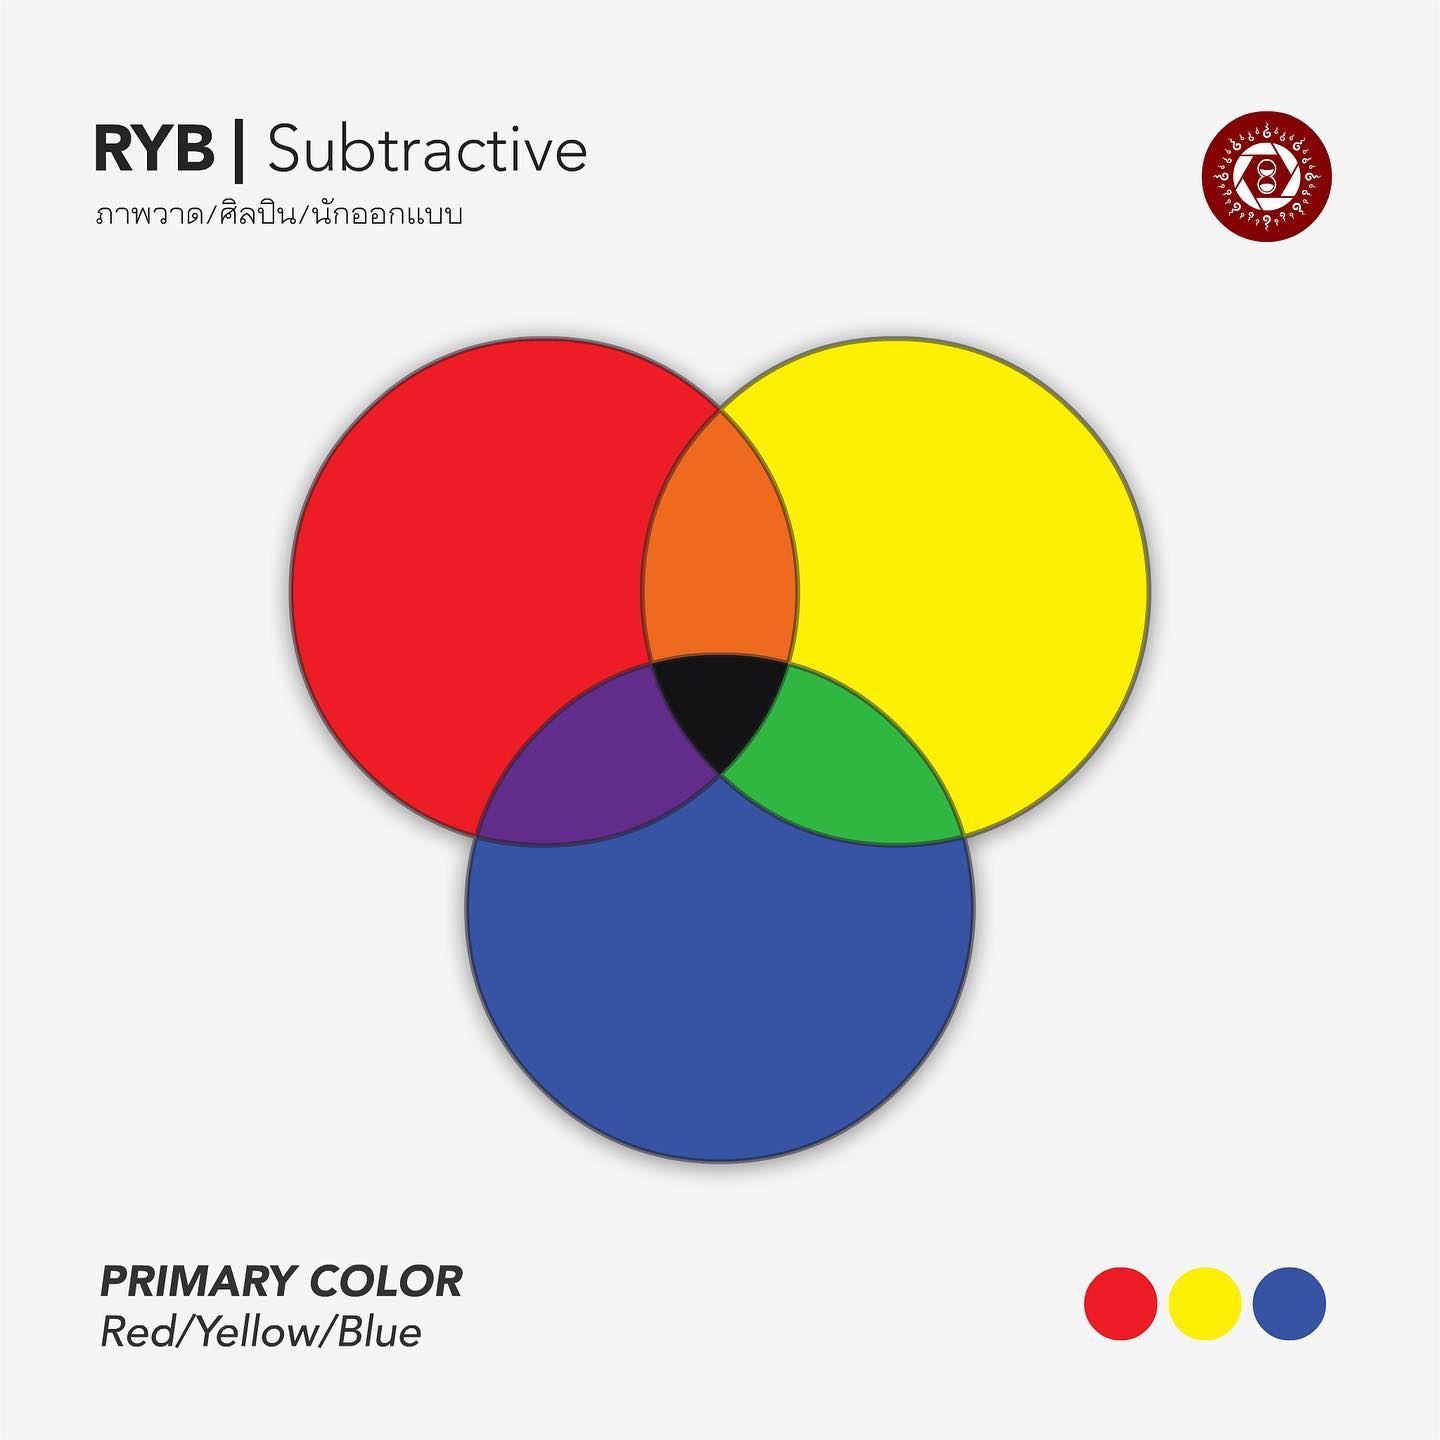 RYB รูปแบบสีของวงการศิลปะ

RYB เป็นรูปแบบที่ค่อนข้างเก่าแก่และถูกสอนถ่ายทอดกันมาเพื่อใช้ในวงการศิลปะ มีสามแม่สีได้แก่ แดง, เหลือง และ น้ำเงิน ซึ่งเป็นการรวมตัวแบบลบ (Subtractive Color) เช่นเดียวกันกับ CMYK รูปแบบสี RYB นี้ในการใช้งานจริงจะหม่นลึก, ไม่อิ่มตัวสดใสเหมือน RGB ที่เห็นบนหน้าจอ #ทฤษฎีสี #ศิลปะ